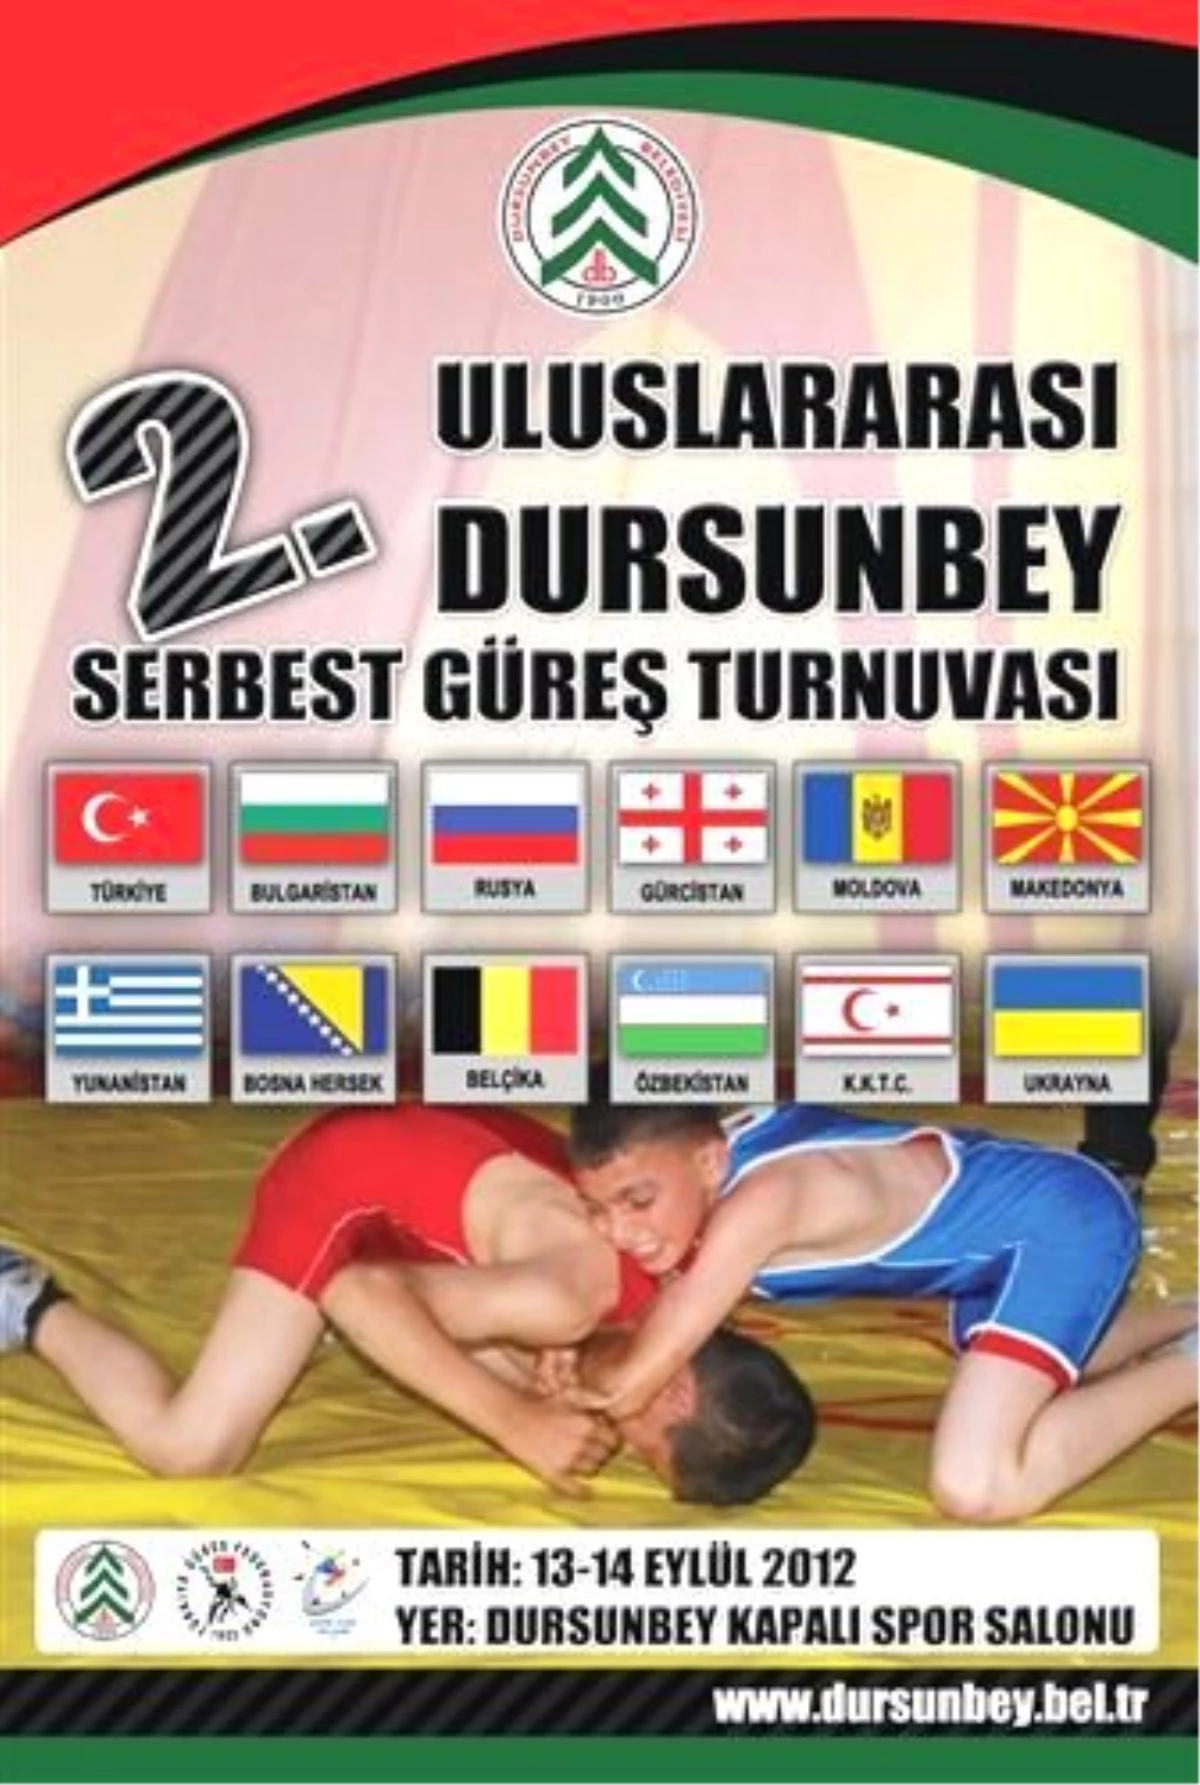 Dursunbey Uluslararası Güreş Turnuvası, Yarın Başlayacak